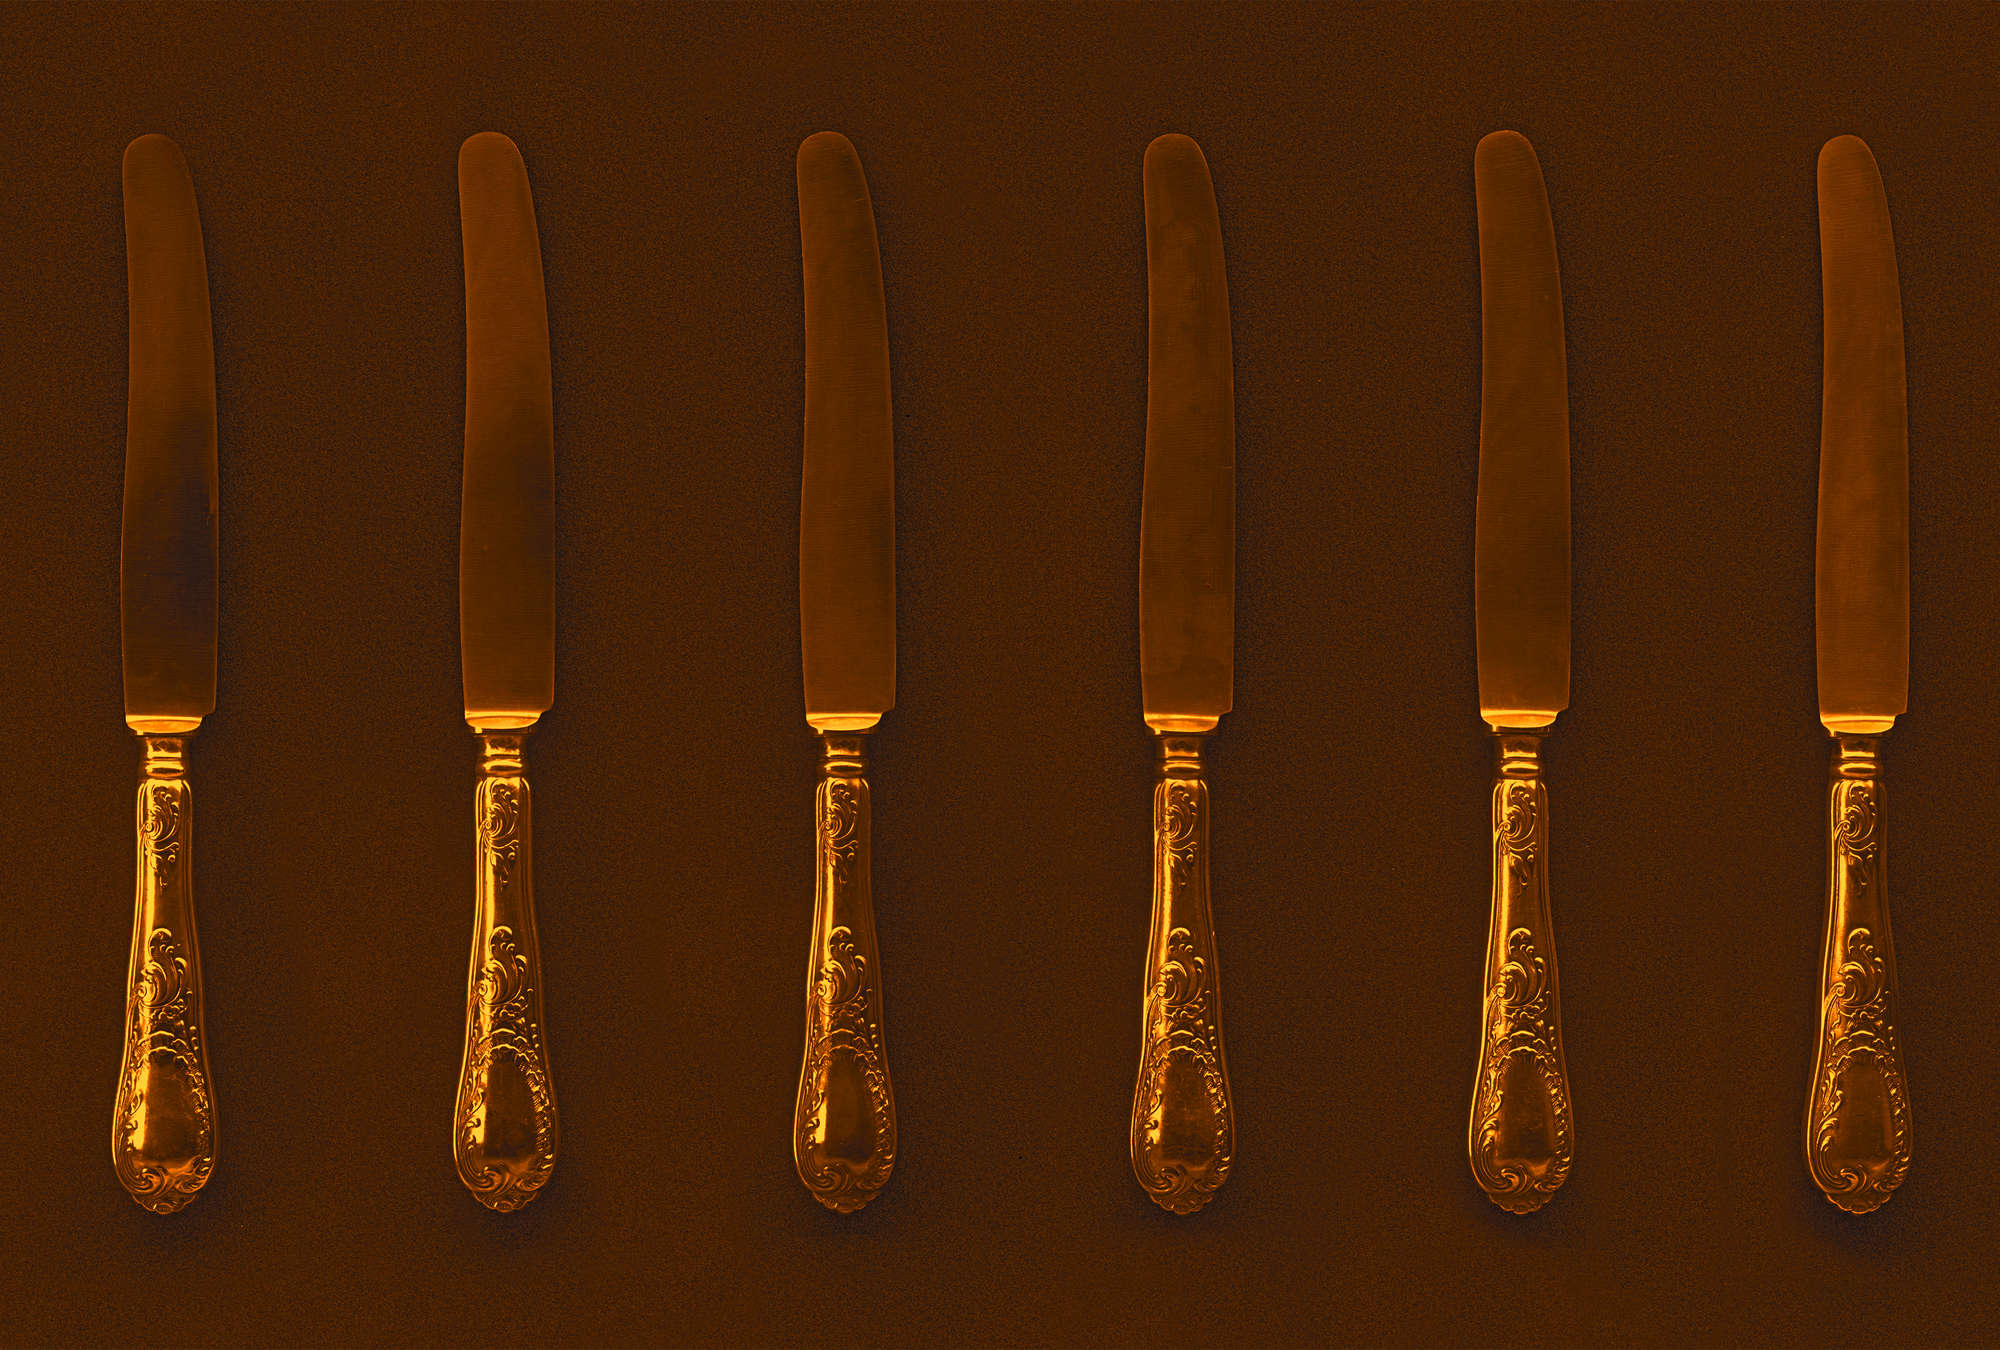             Papel pintado de cocina naranja y marrón con cuchillos antiguos
        